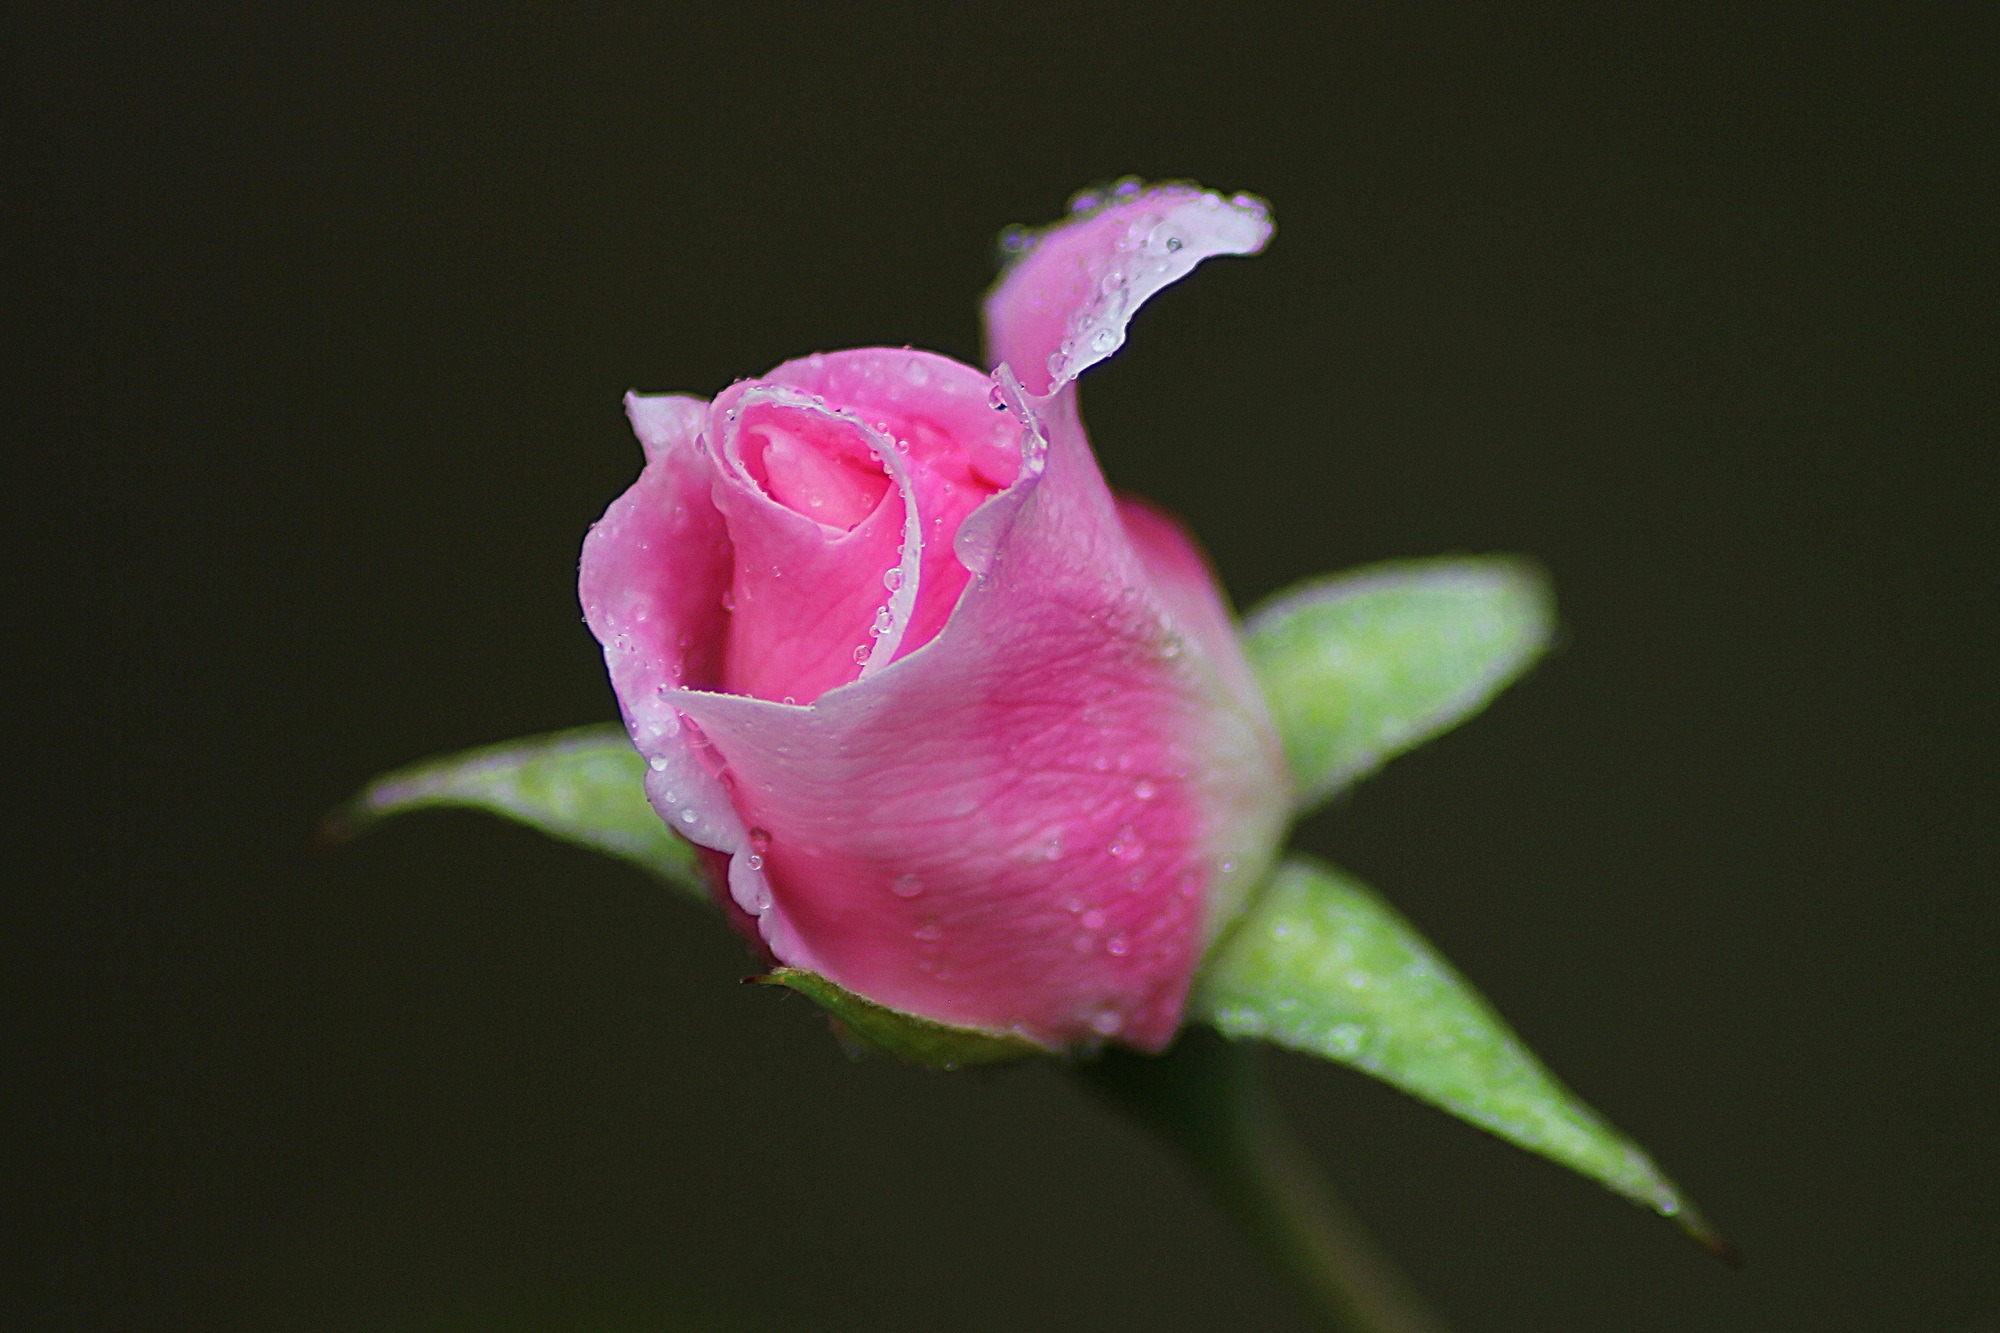 bud, flower, drops, macro, rose flower, rose cellphone